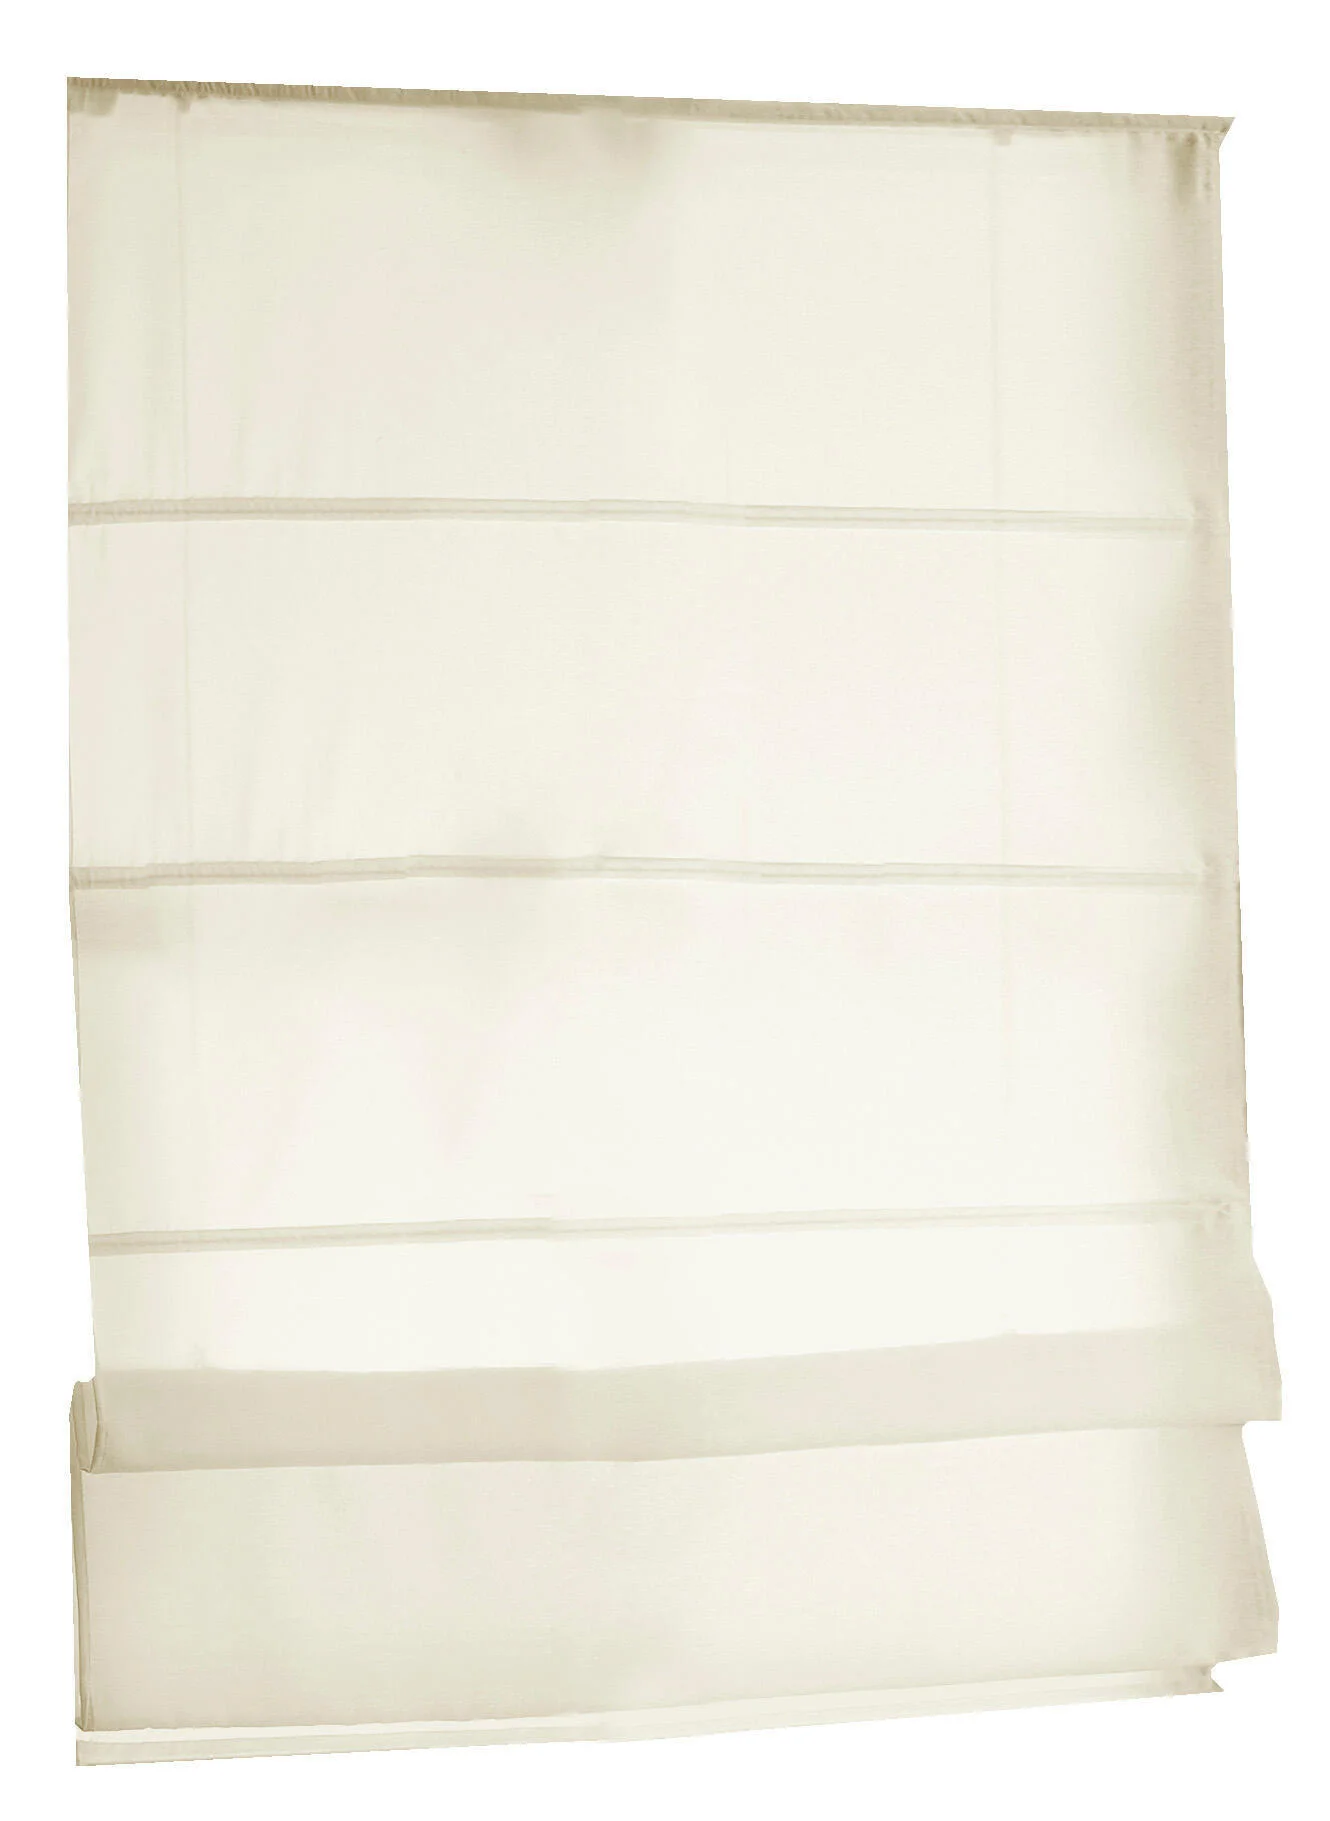 Rollos & More Tenda a Pacchetto Kessy” Colore Bianco Misure Circa 45 x 142 cm 